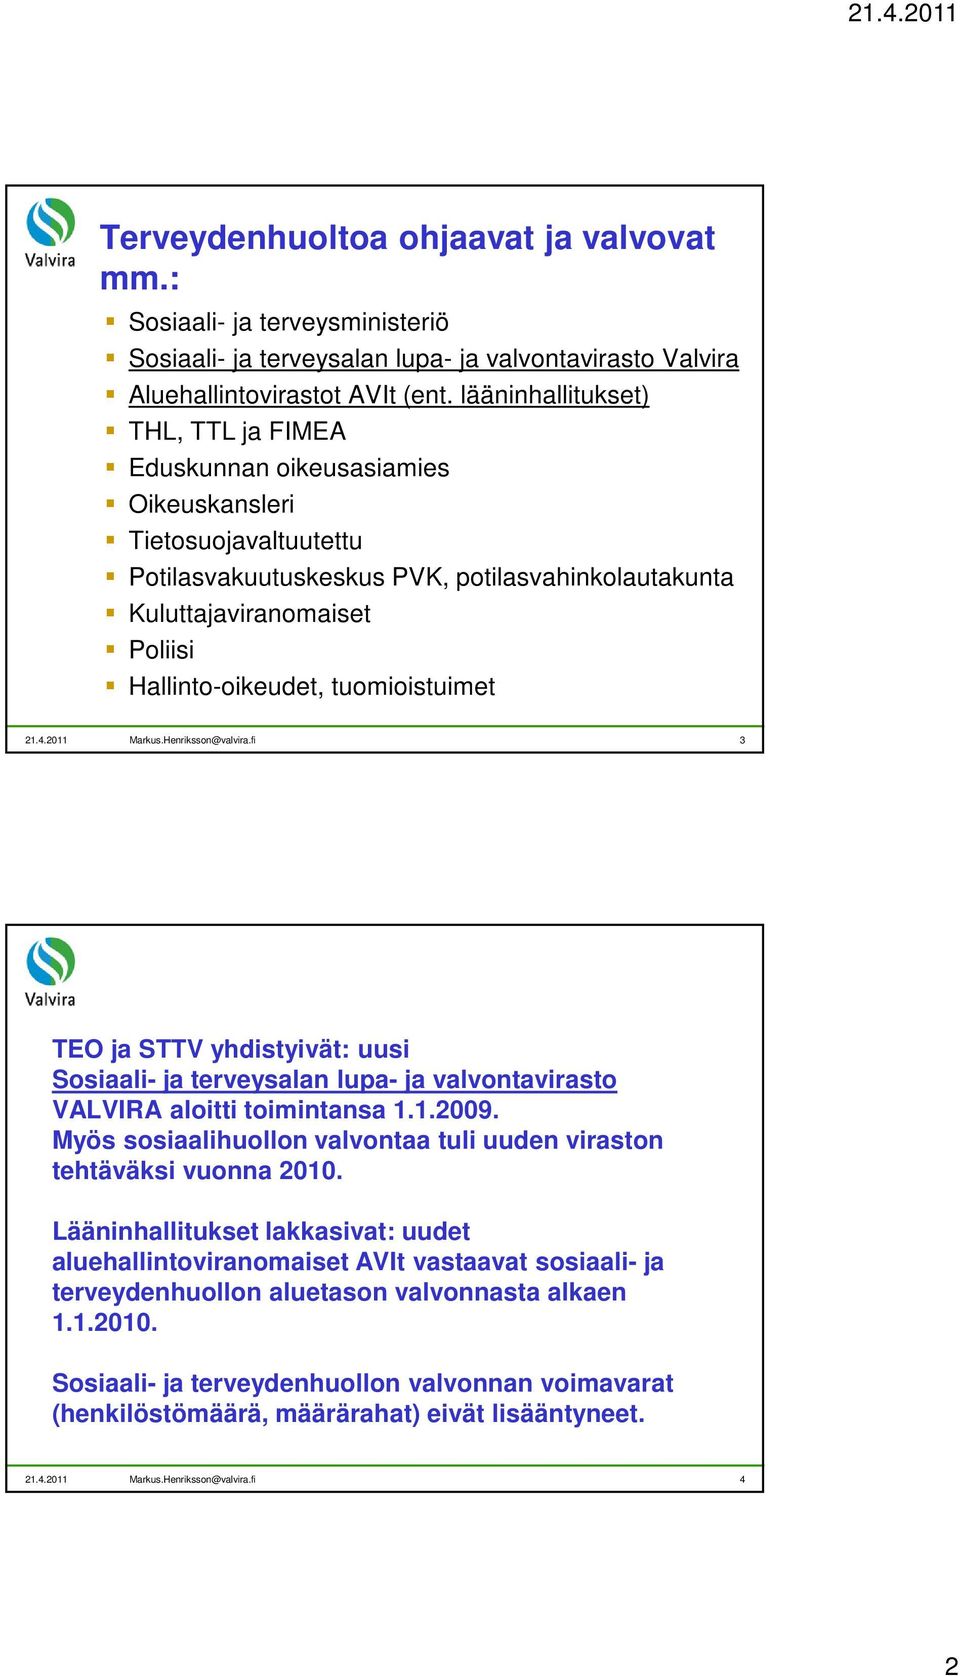 Hallinto-oikeudet, tuomioistuimet 21.4.2011 Markus.Henriksson@valvira.fi 3 TEO ja STTV yhdistyivät: uusi Sosiaali- ja terveysalan lupa- ja valvontavirasto VALVIRA aloitti toimintansa 1.1.2009.